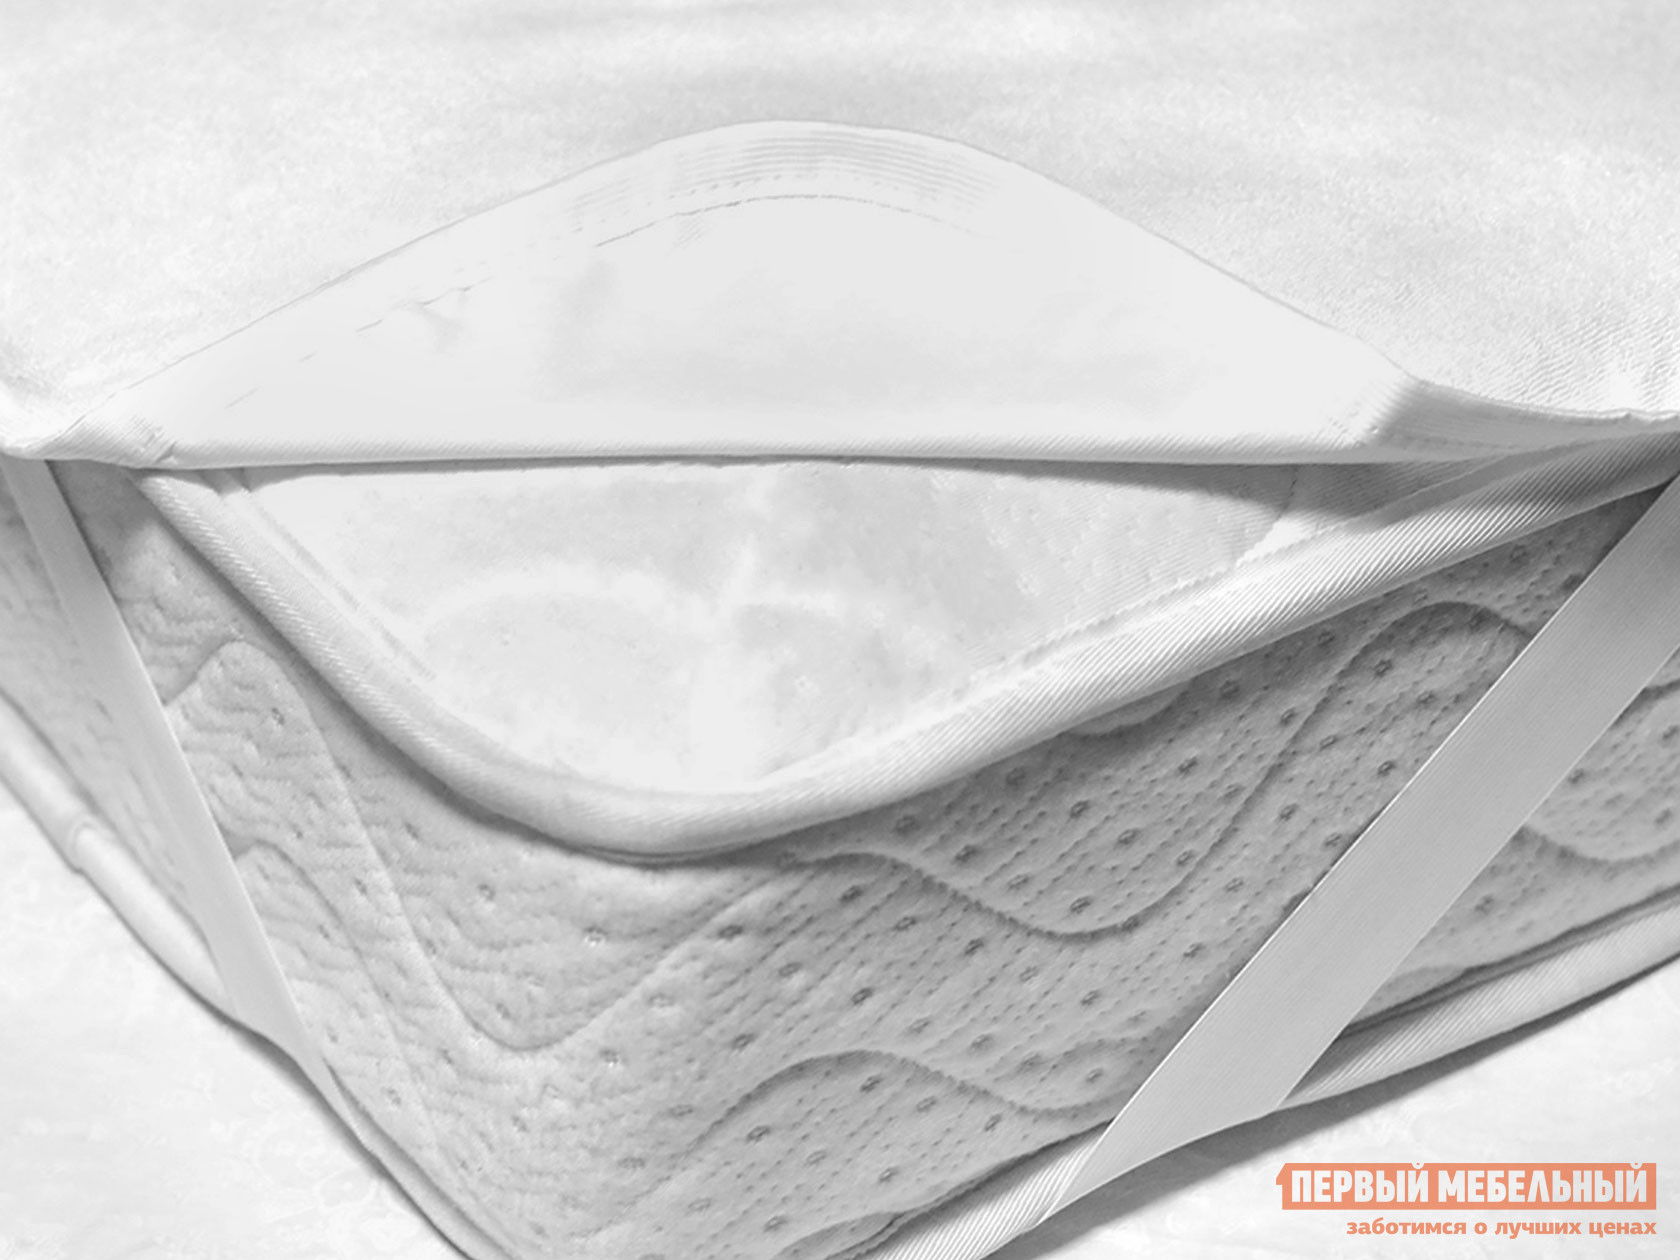 Чехол для матраса  Фулл протекшн на резинке Белый махровый, 1600 Х 2000 мм от Первый Мебельный